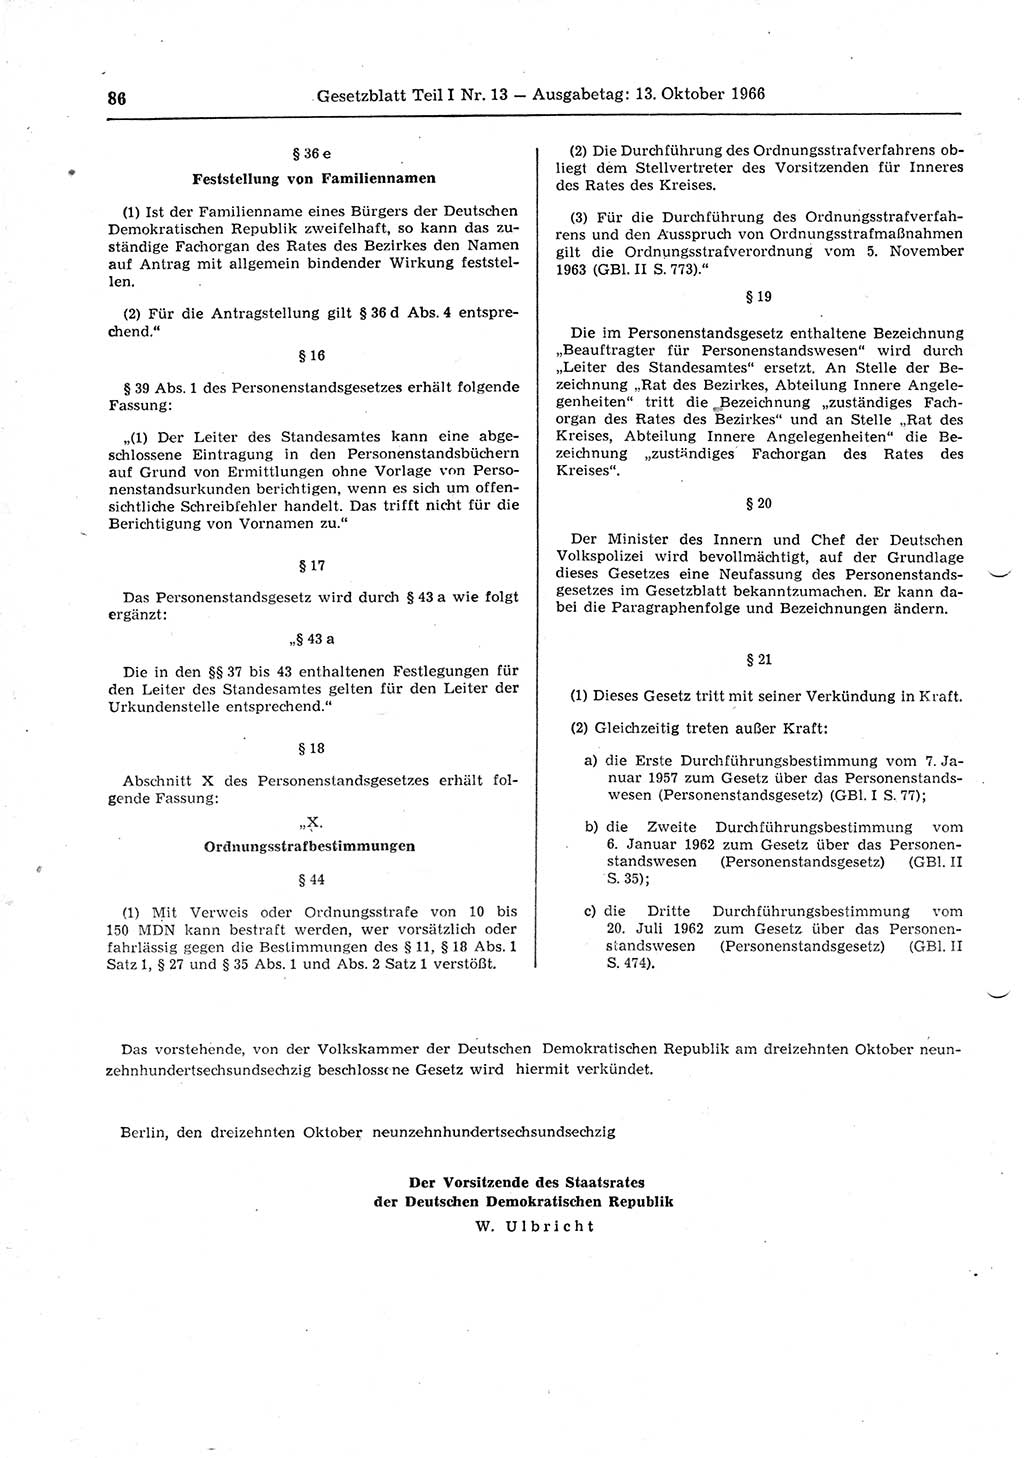 Gesetzblatt (GBl.) der Deutschen Demokratischen Republik (DDR) Teil Ⅰ 1966, Seite 86 (GBl. DDR Ⅰ 1966, S. 86)